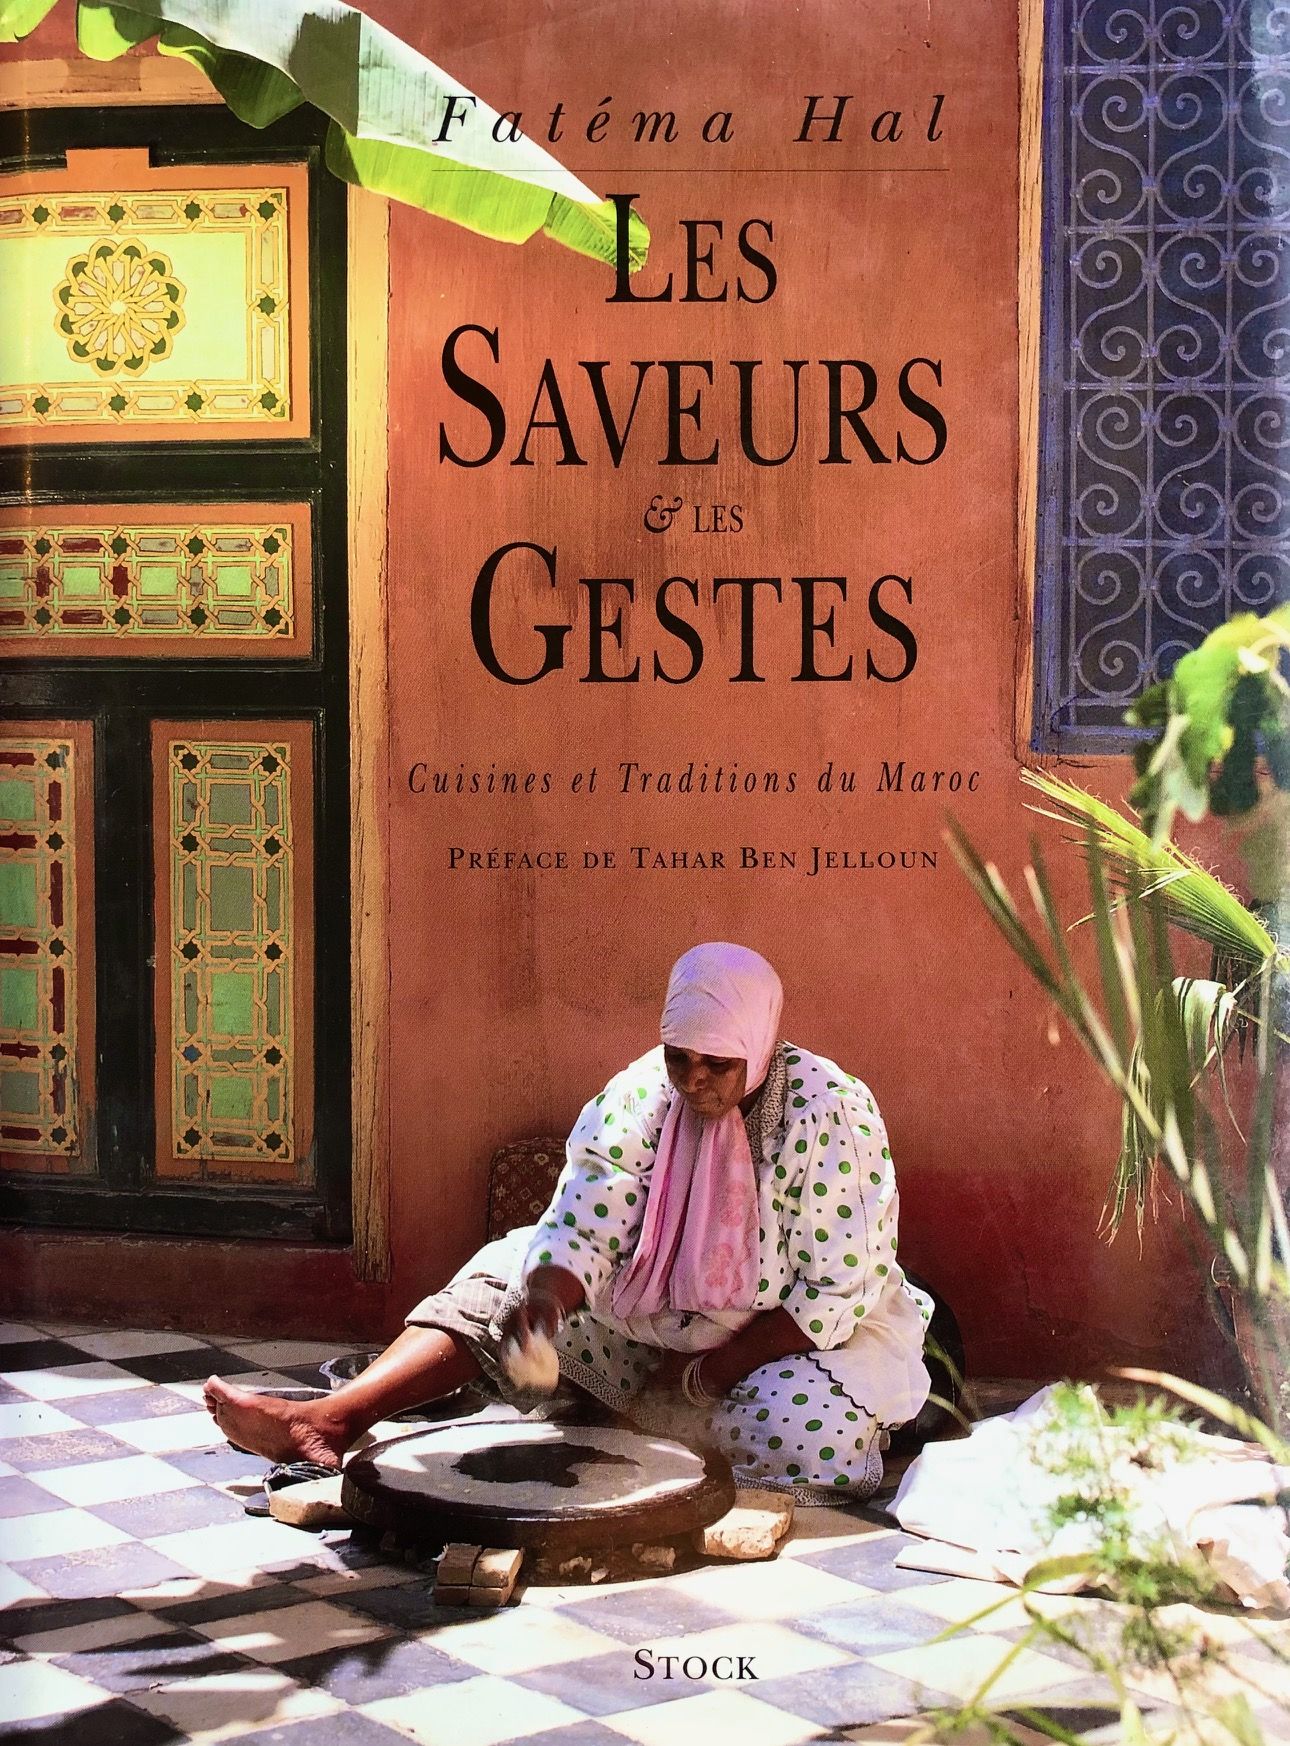 (*NEW ARRIVAL*) (Moroccan) Fatéma Hal. Les saveurs & les gestes: Cuisines et traditions du Maroc